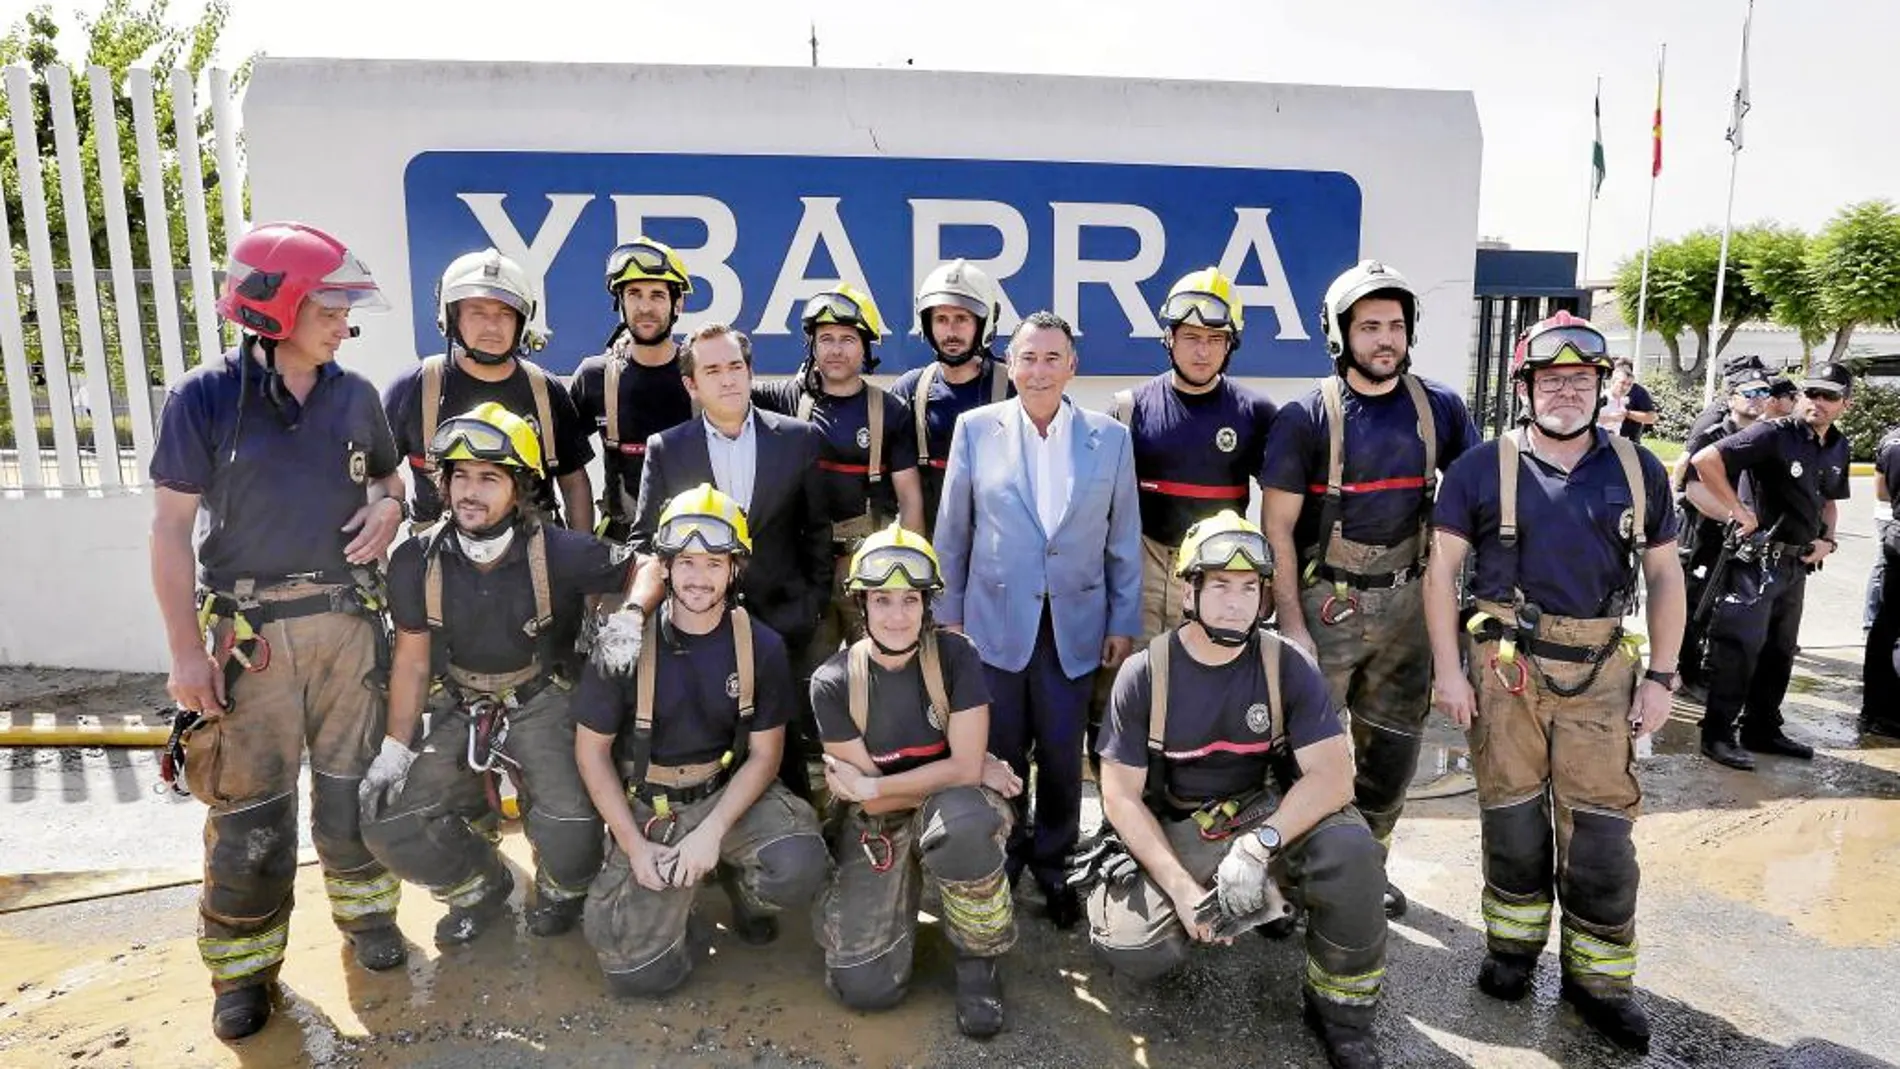 Los representantes de Ybarra agradecieron la labor de los bomberos